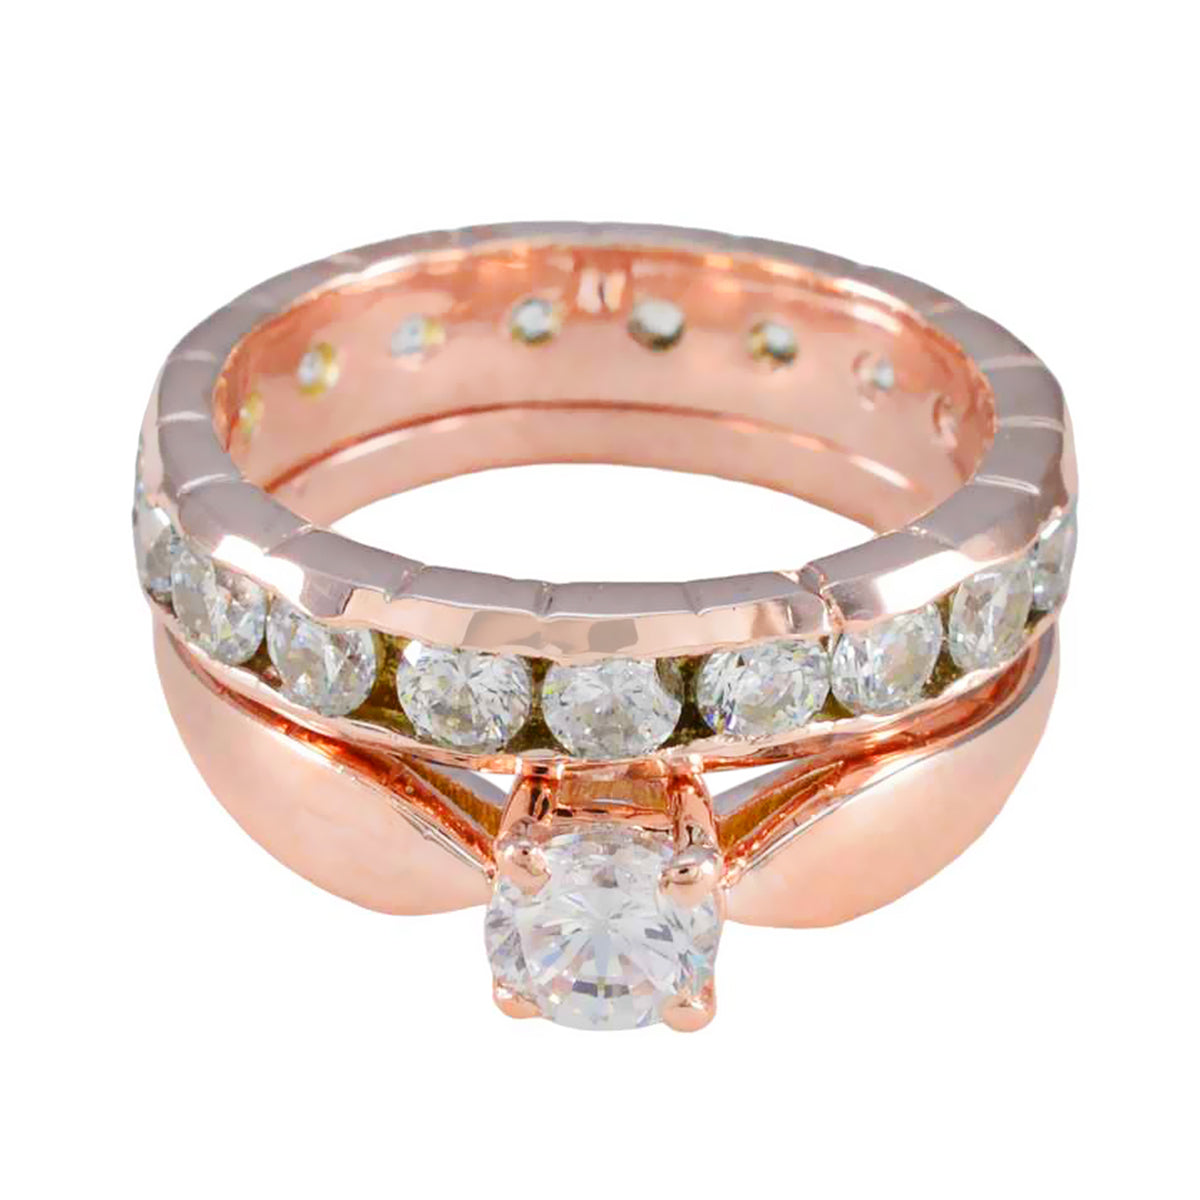 Riyo – bague en argent avec placage en or rose, pierre cz blanche, forme ronde, serti de griffes, bijoux de créateur, bague de mariage